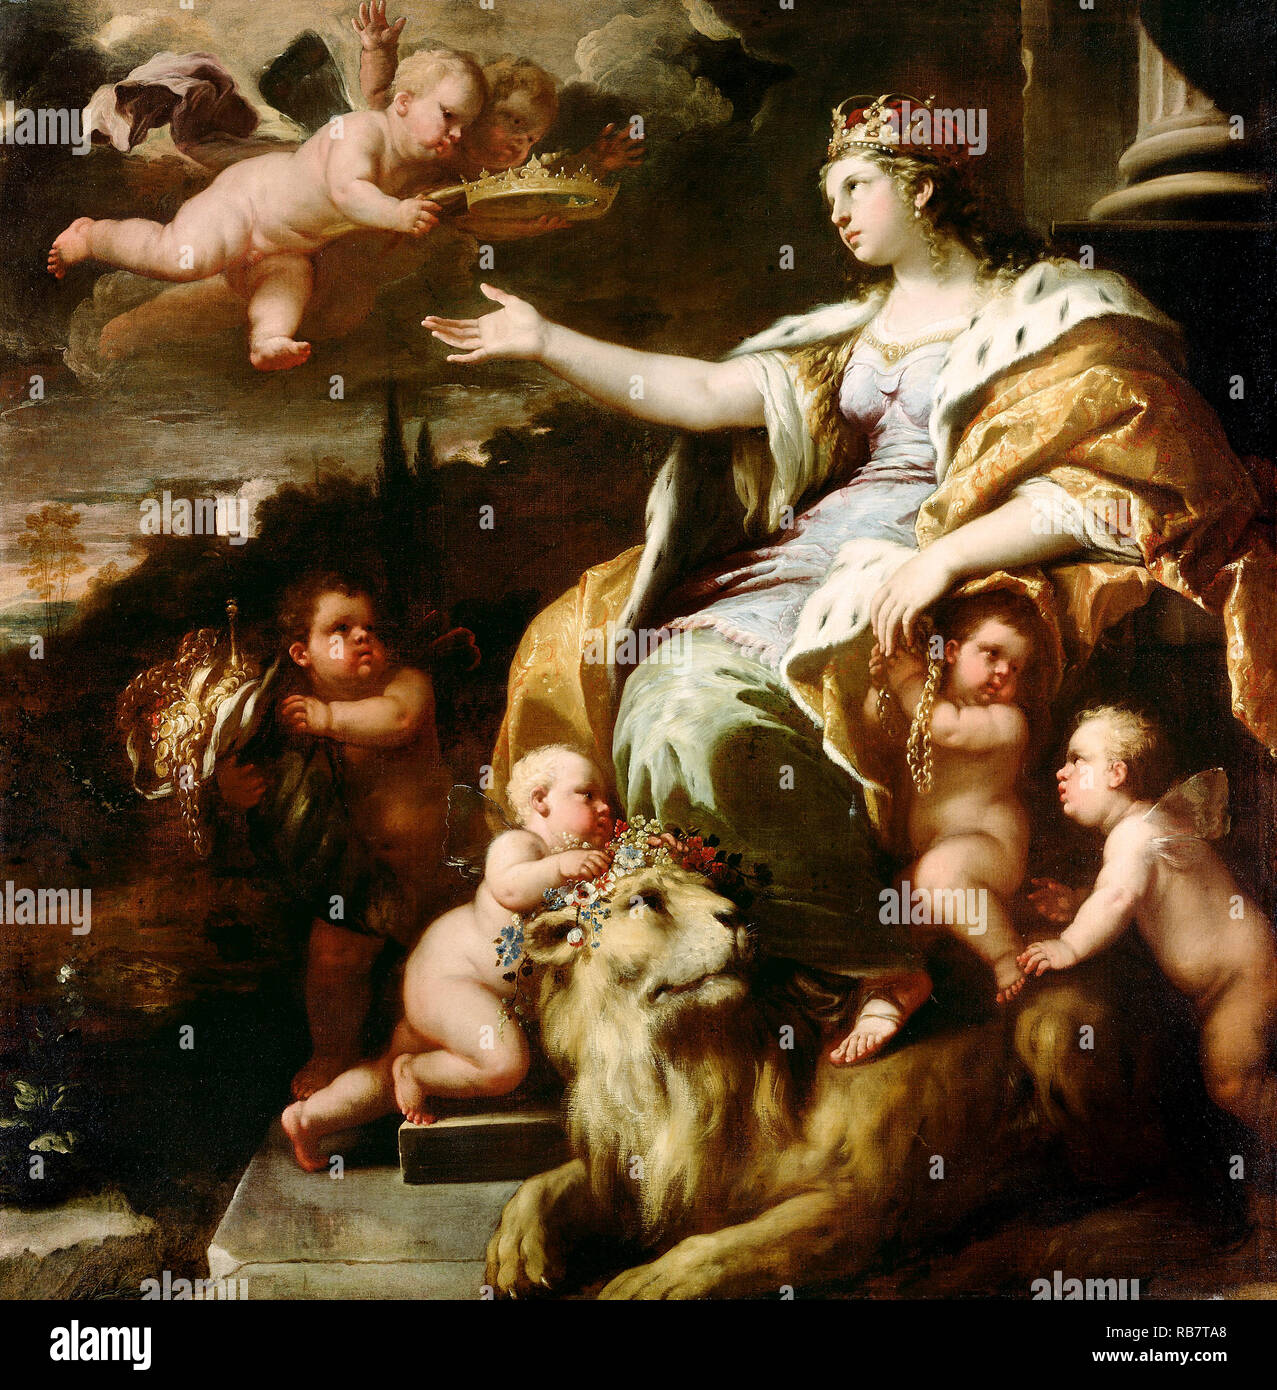 Luca Giordano, allegoria della magnanimità, circa 1670 olio su tela, J. Paul Getty Museum di Los Angeles, Stati Uniti d'America. Foto Stock